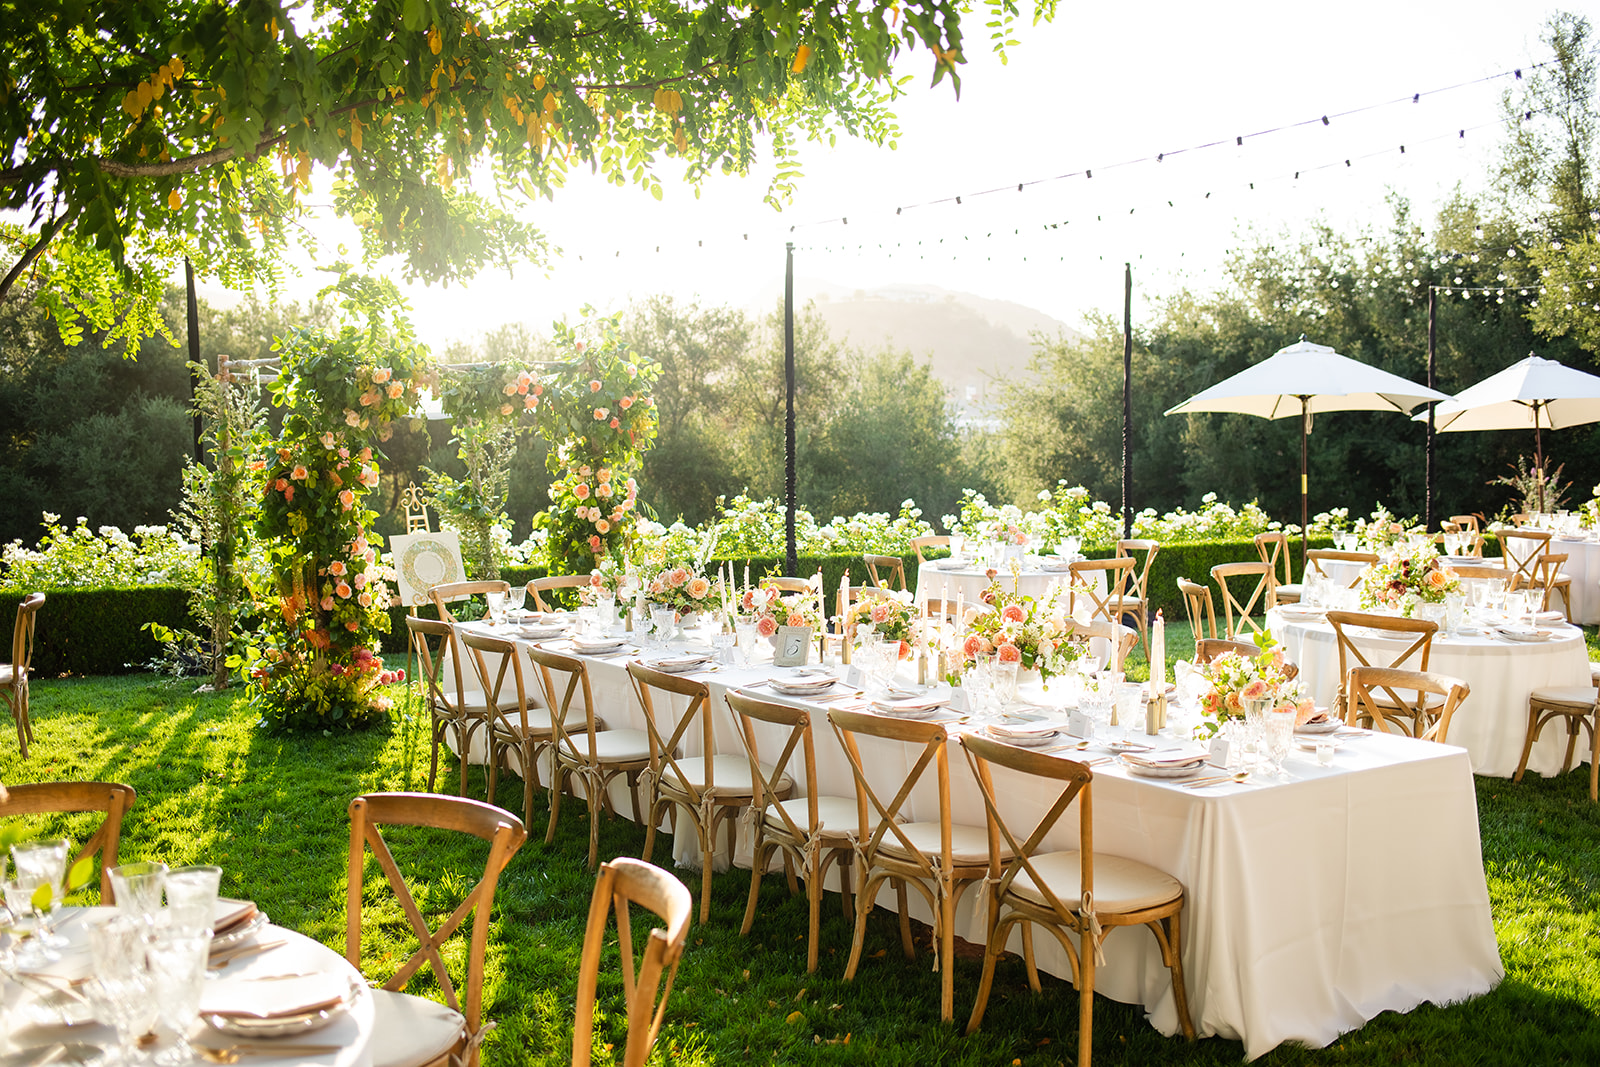 https://erinmartonphoto.com/wp-content/uploads/sites/11888/2022/06/garden-party-wedding-los-angeles-1.jpg